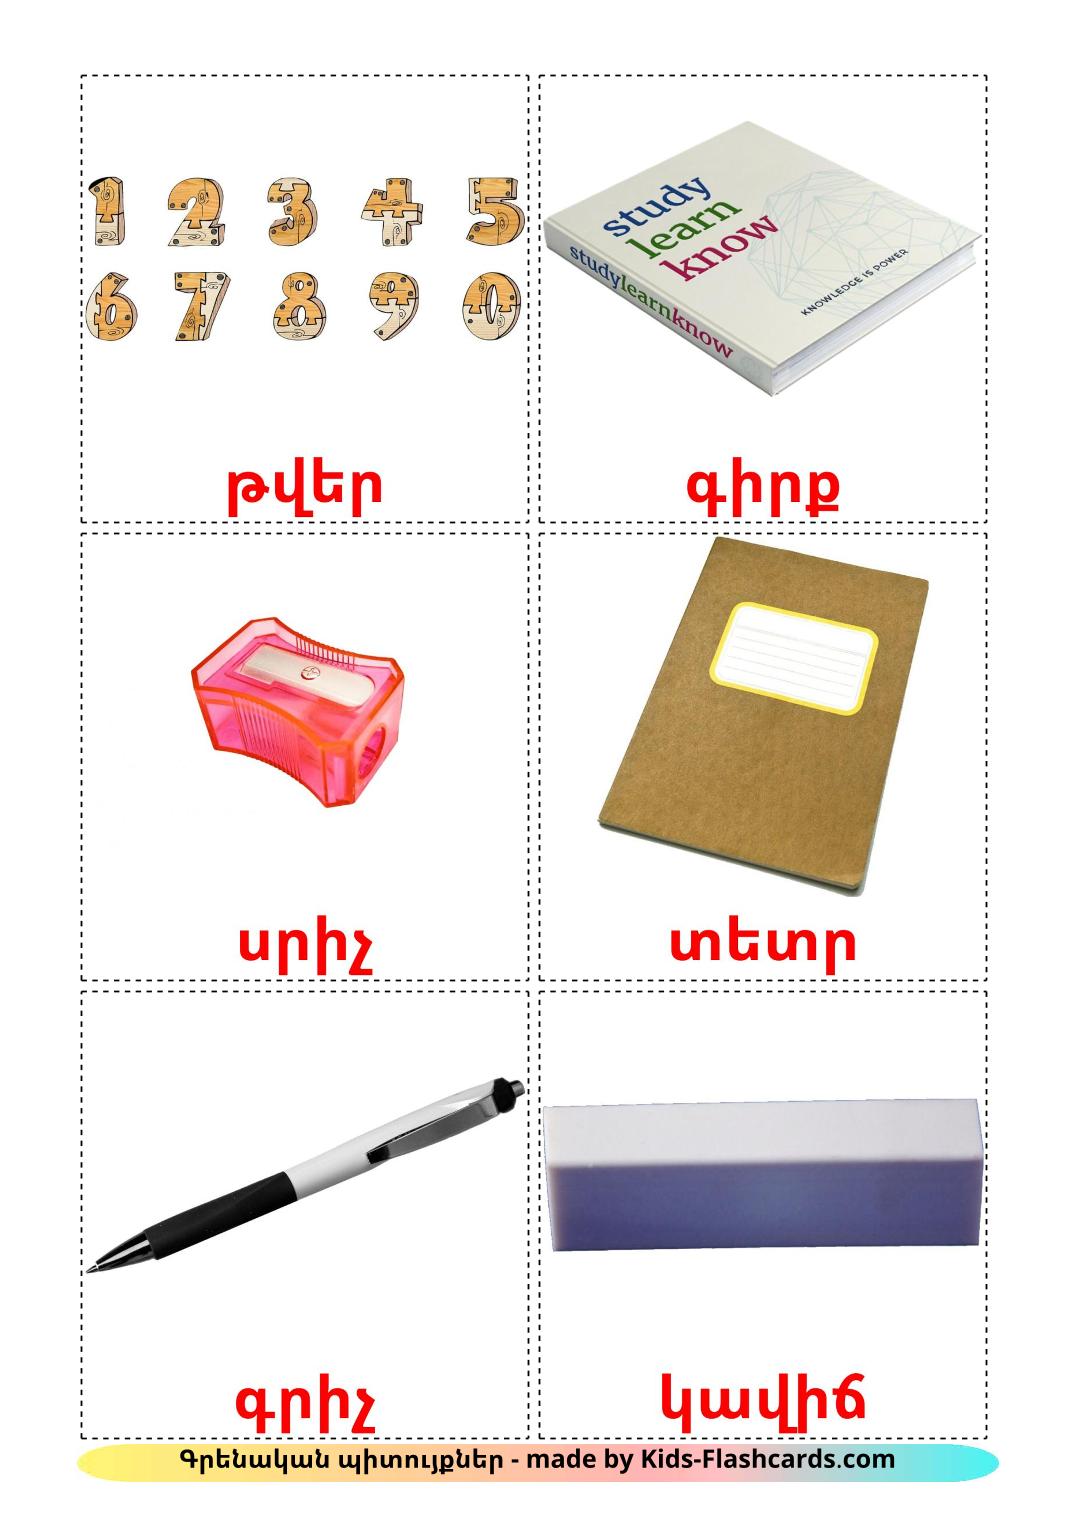 Objetos de sala de aula - 36 Flashcards armênioes gratuitos para impressão